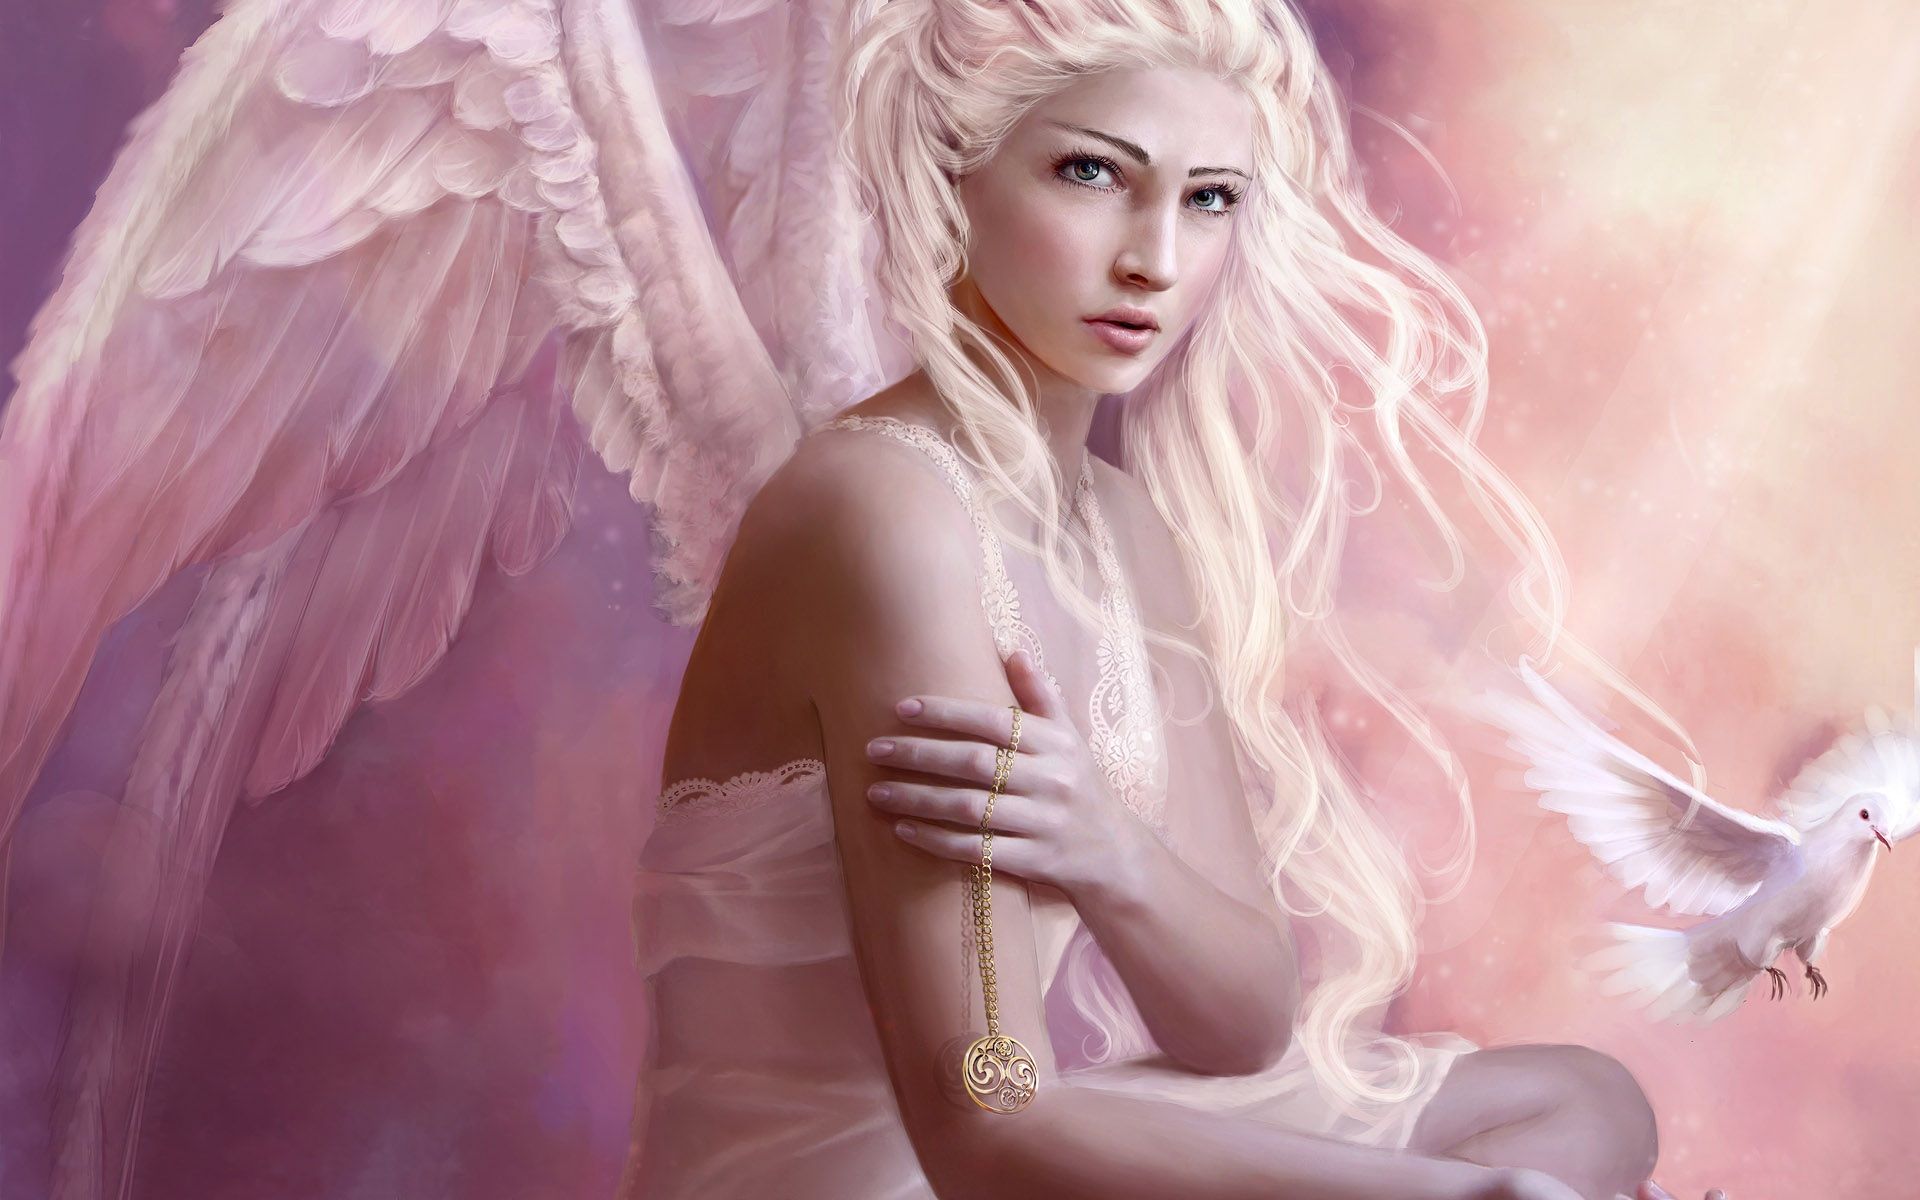 Image detail for -Angel girl white hair Wallpaperx1200 wallpaper download. Angel wallpaper, Angel picture, Fantasy girl